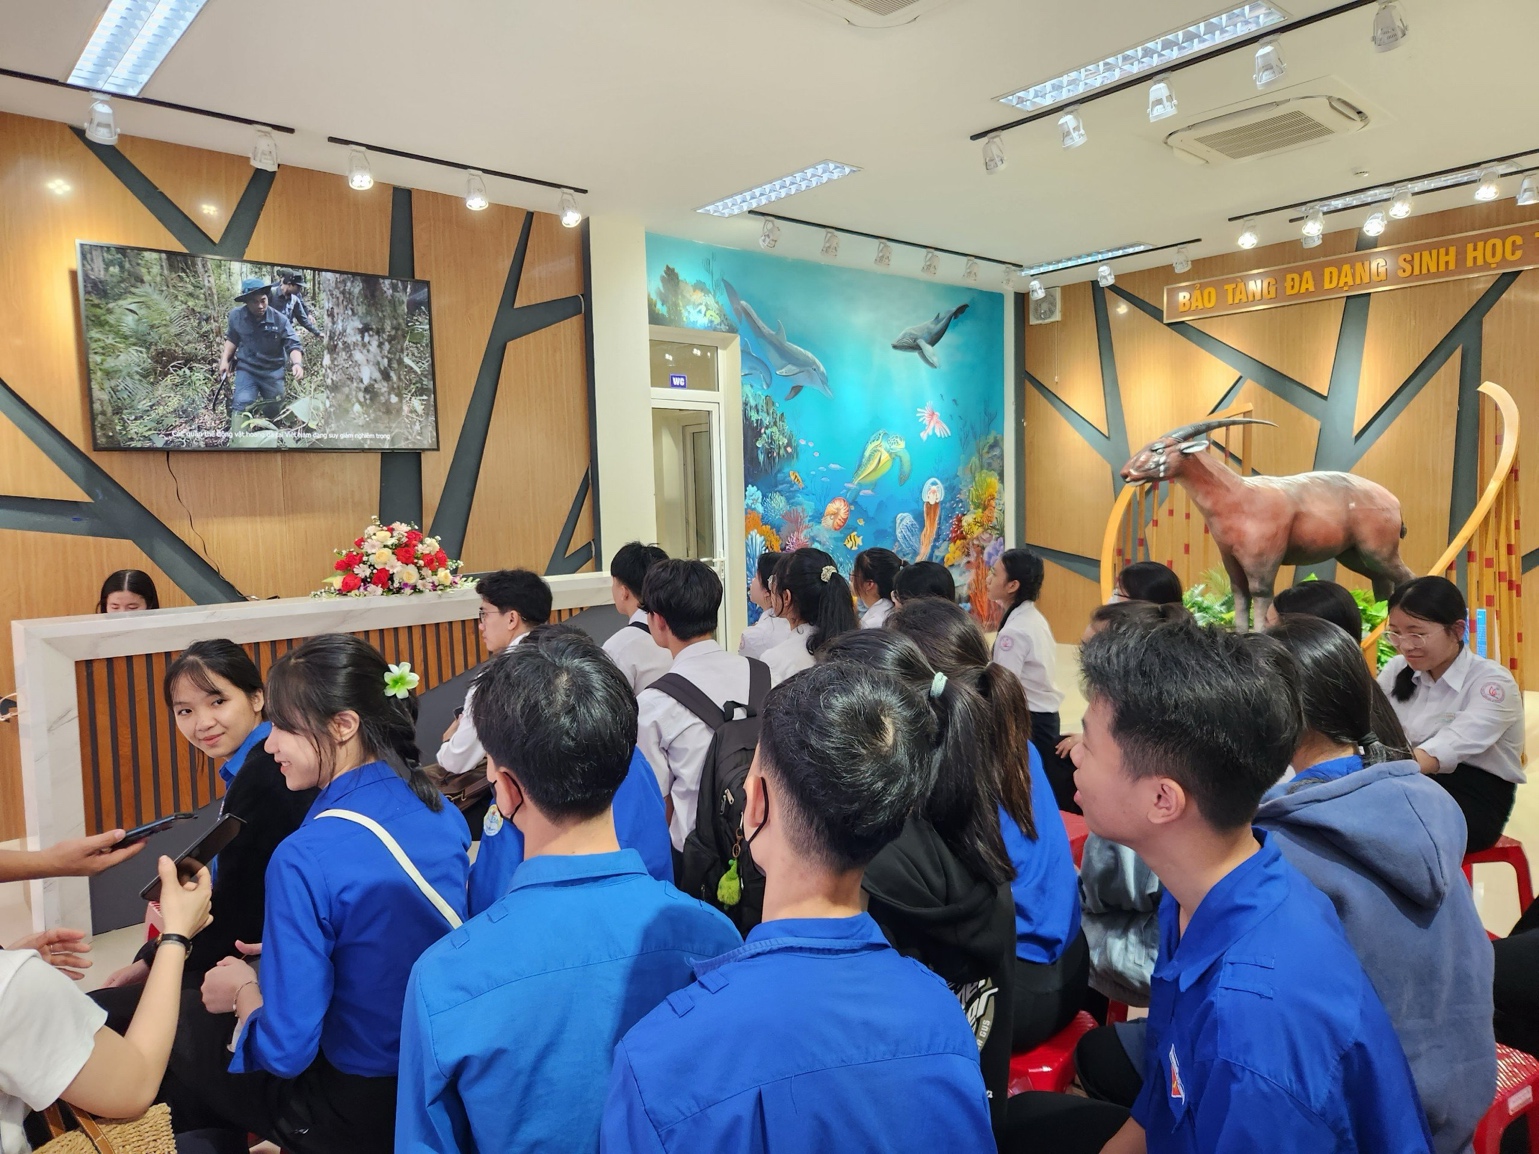 Thăm bảo tàng đa dạng sinh học cấp tỉnh đầu tiên trên cả nước tại Quảng Nam - 12